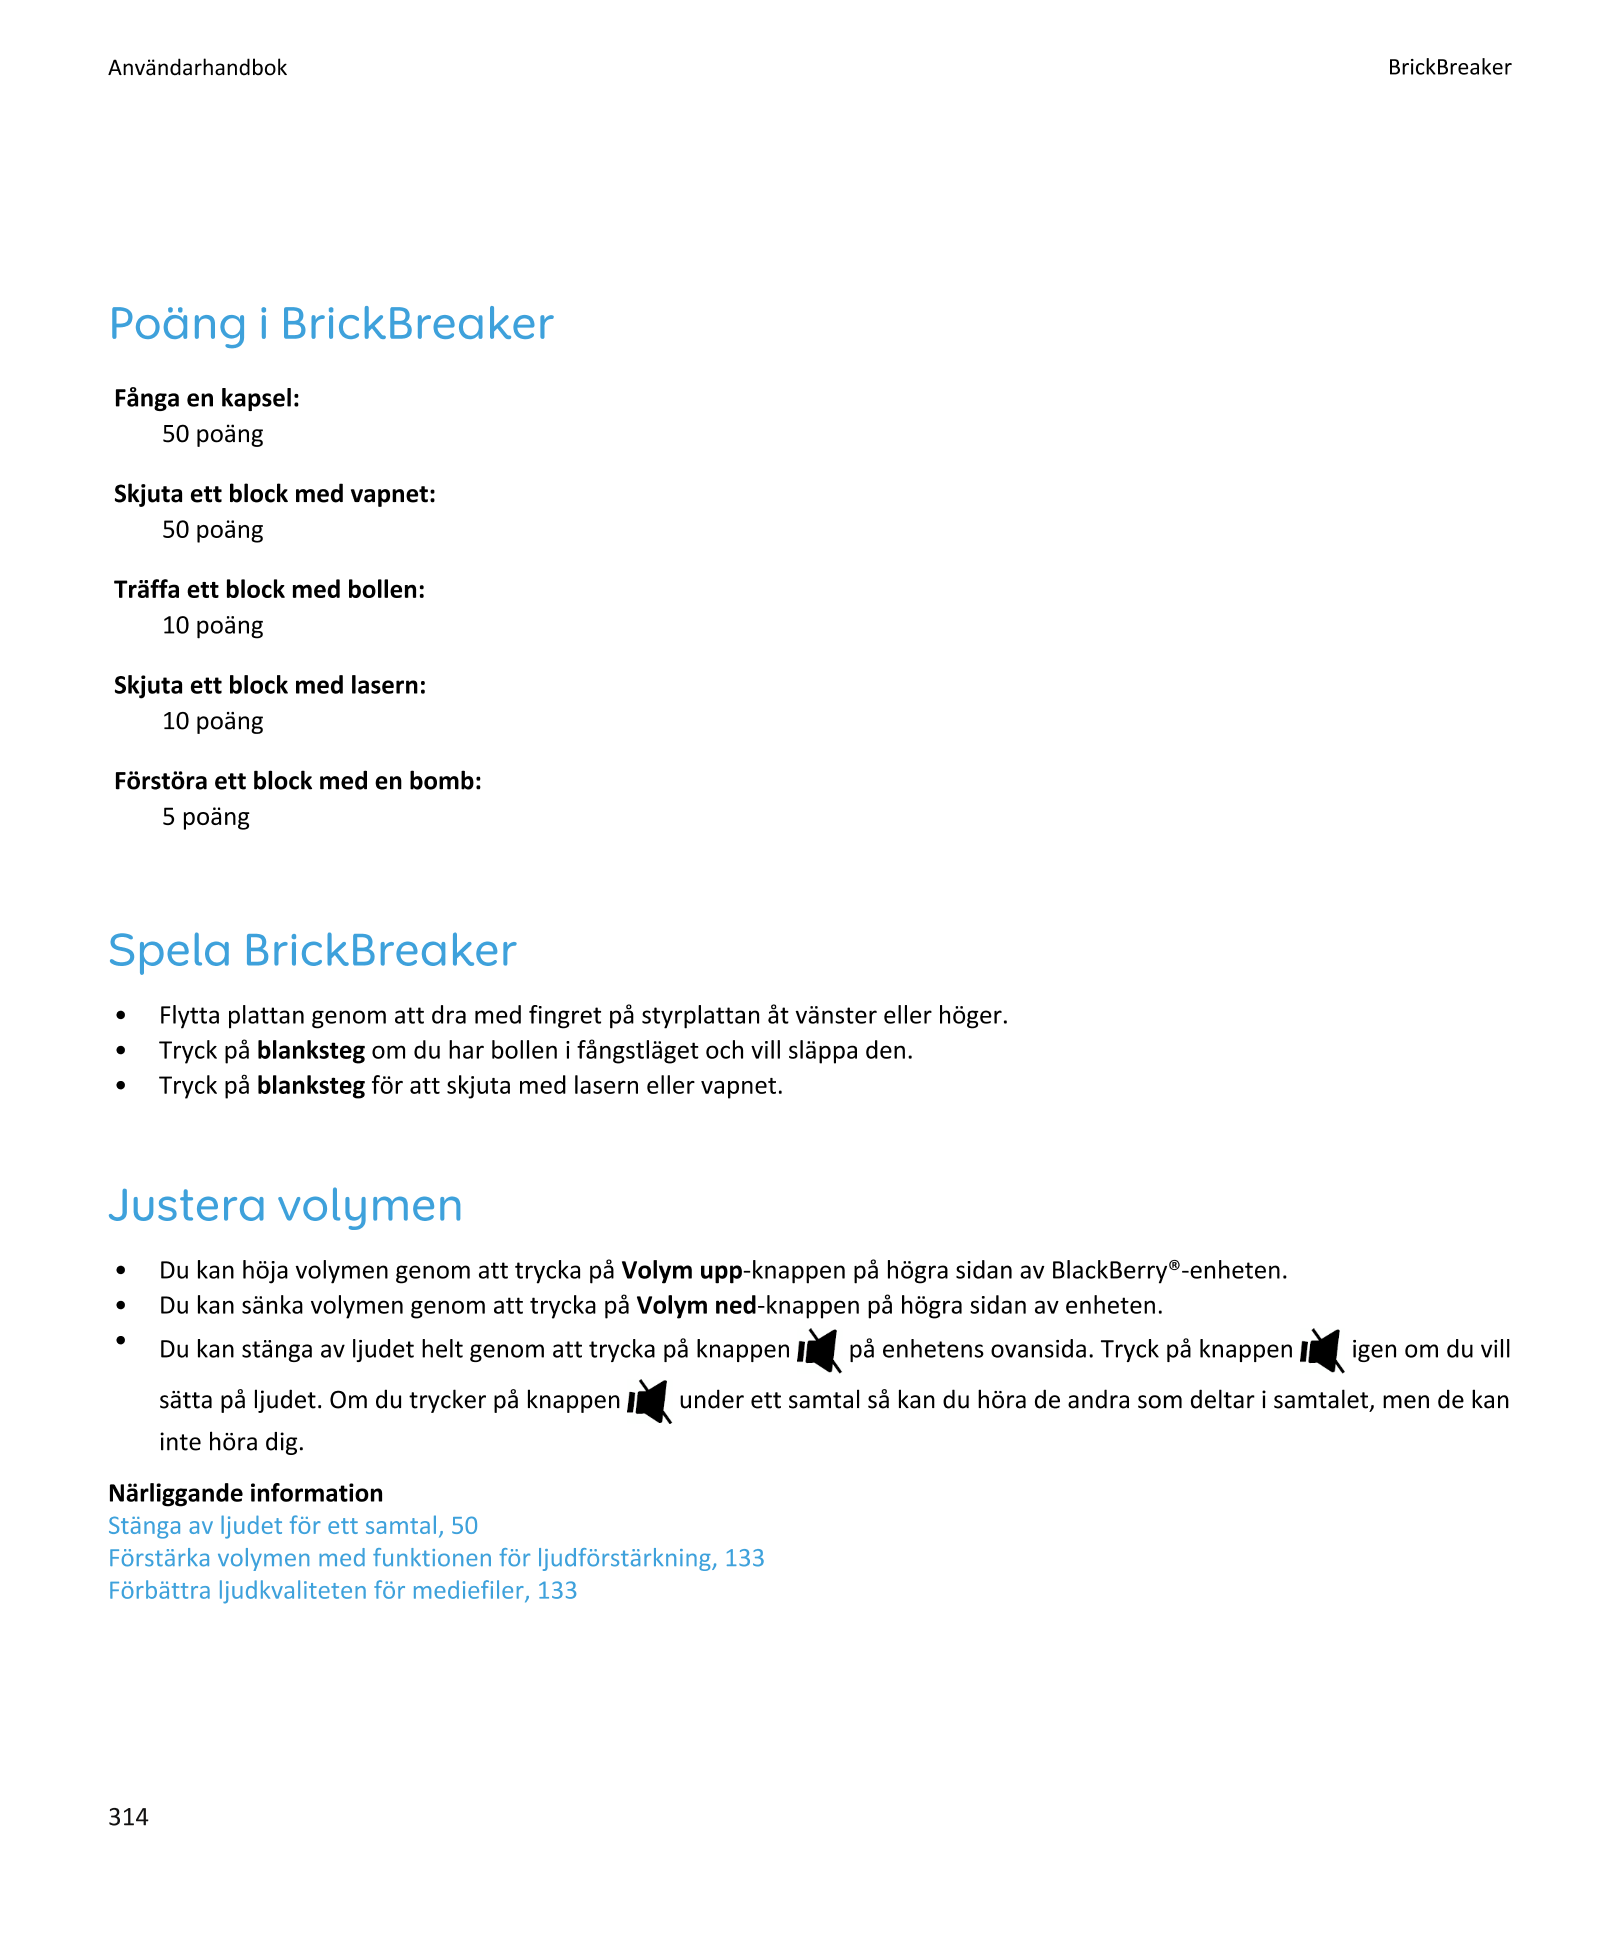 Användarhandbok BrickBreaker
Poäng i BrickBreaker
Fånga en kapsel:
50 poäng
Skjuta ett block med vapnet:
50 poäng
Träffa ett blo